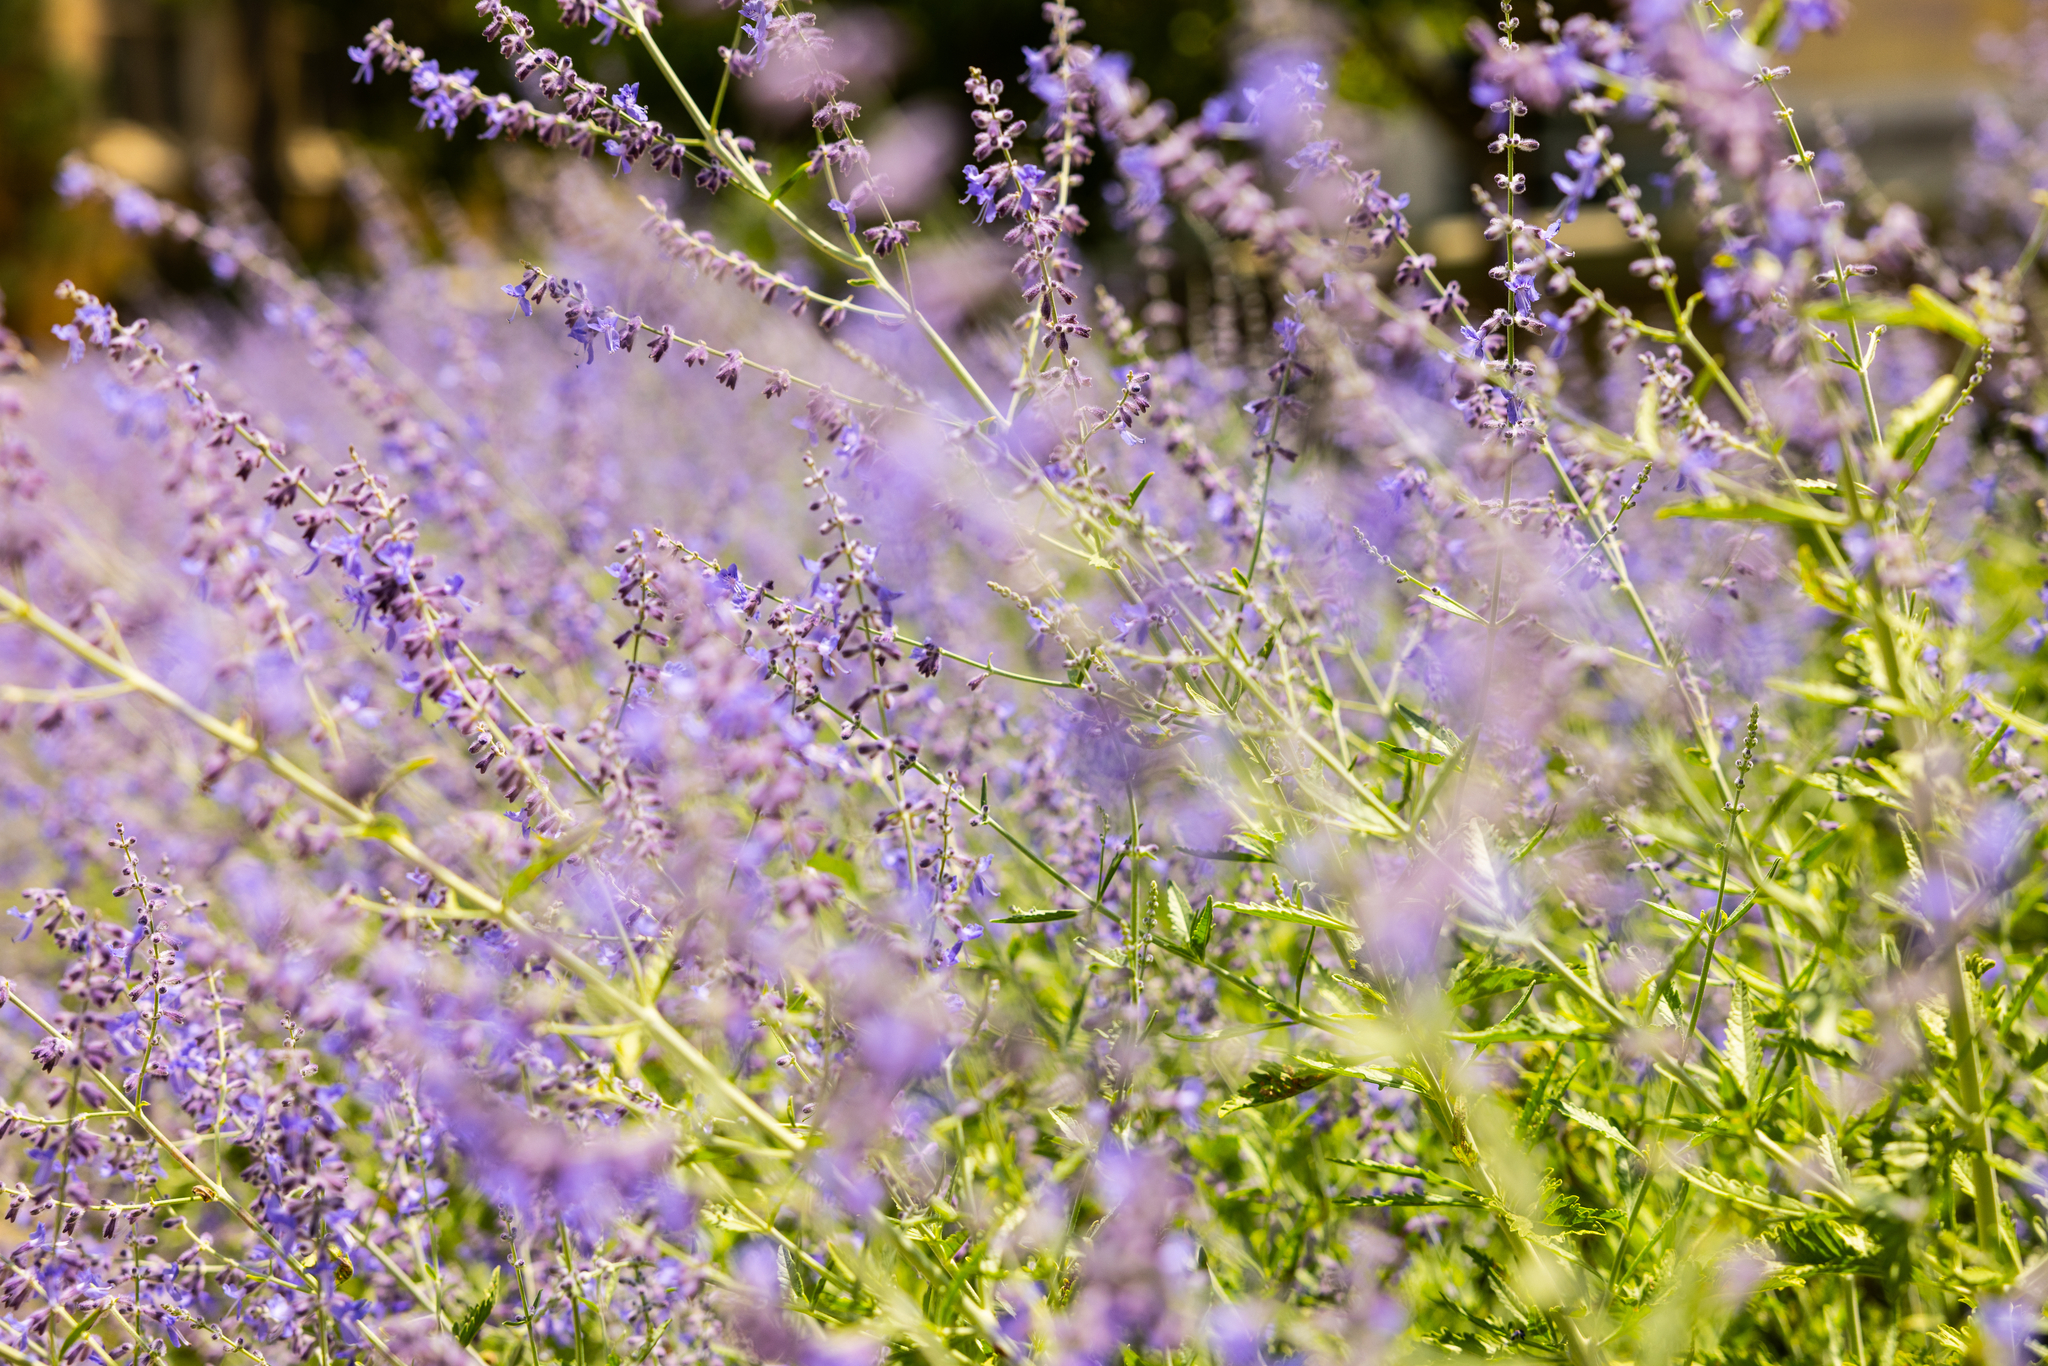 Purple flowers blowing in the wind